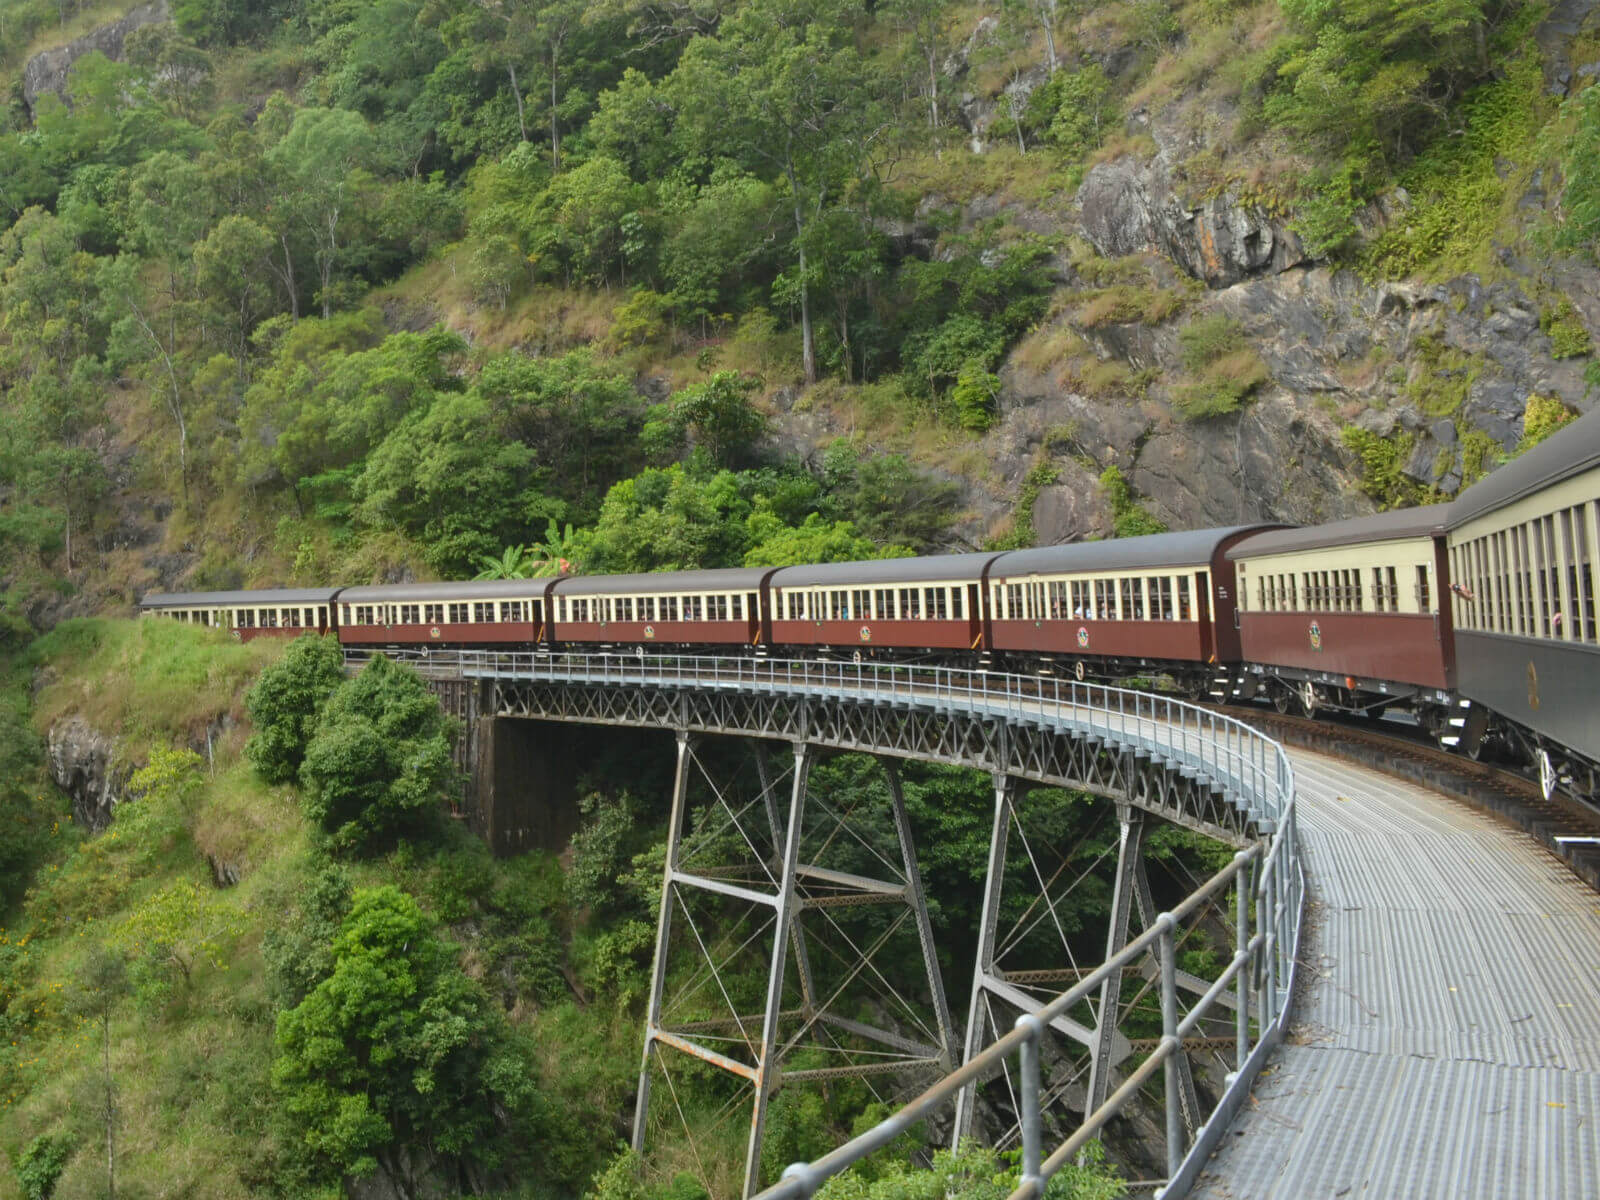 kuranda scenic railway and skyrail tour